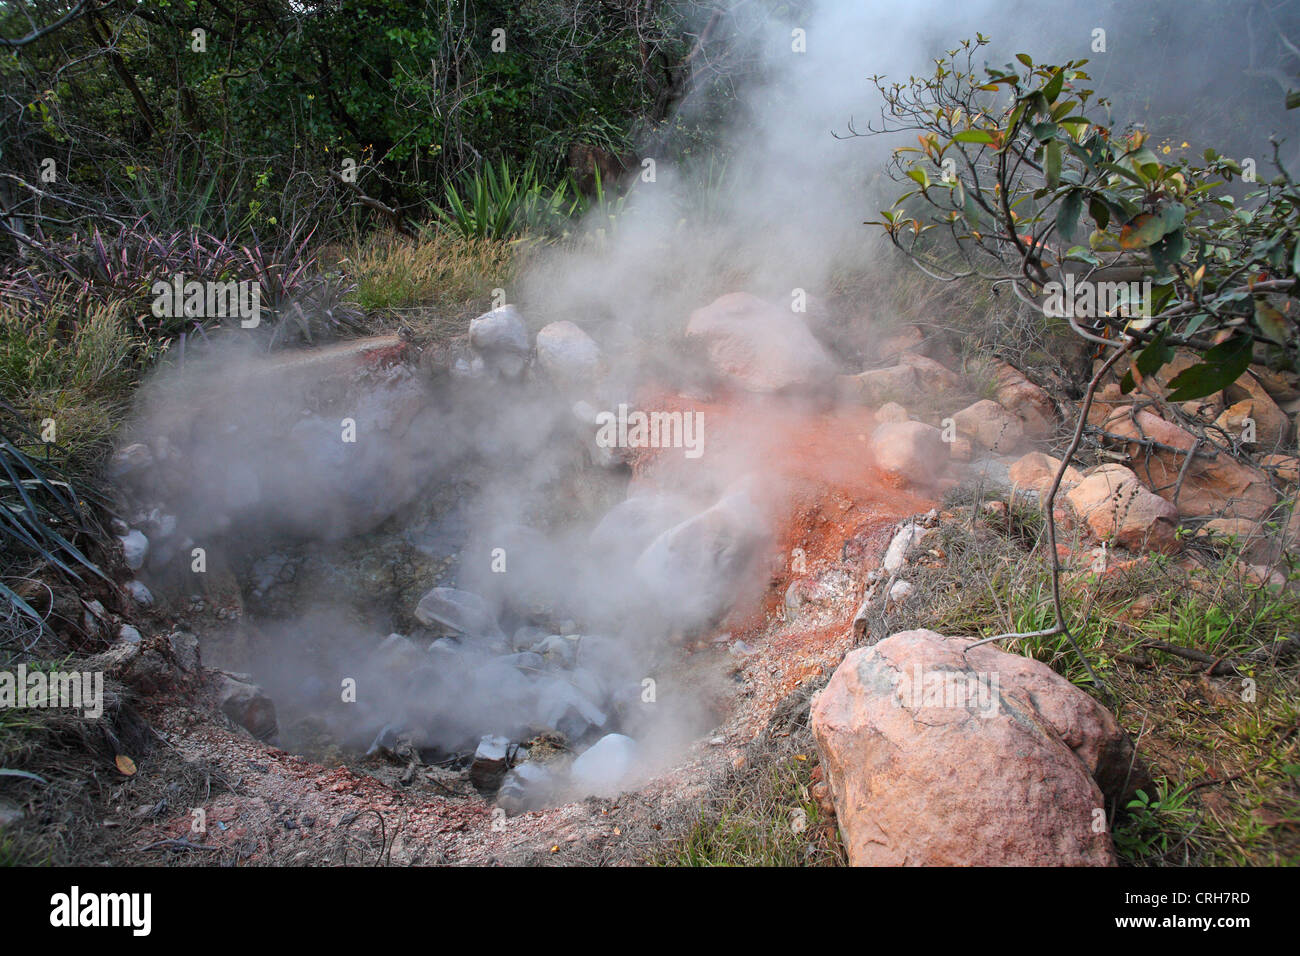 Volcanic fumarole in rainforest. Las Pailas trail, Rincon de la Vieja National Park, Guanacaste, Costa Rica. February 2012. Stock Photo